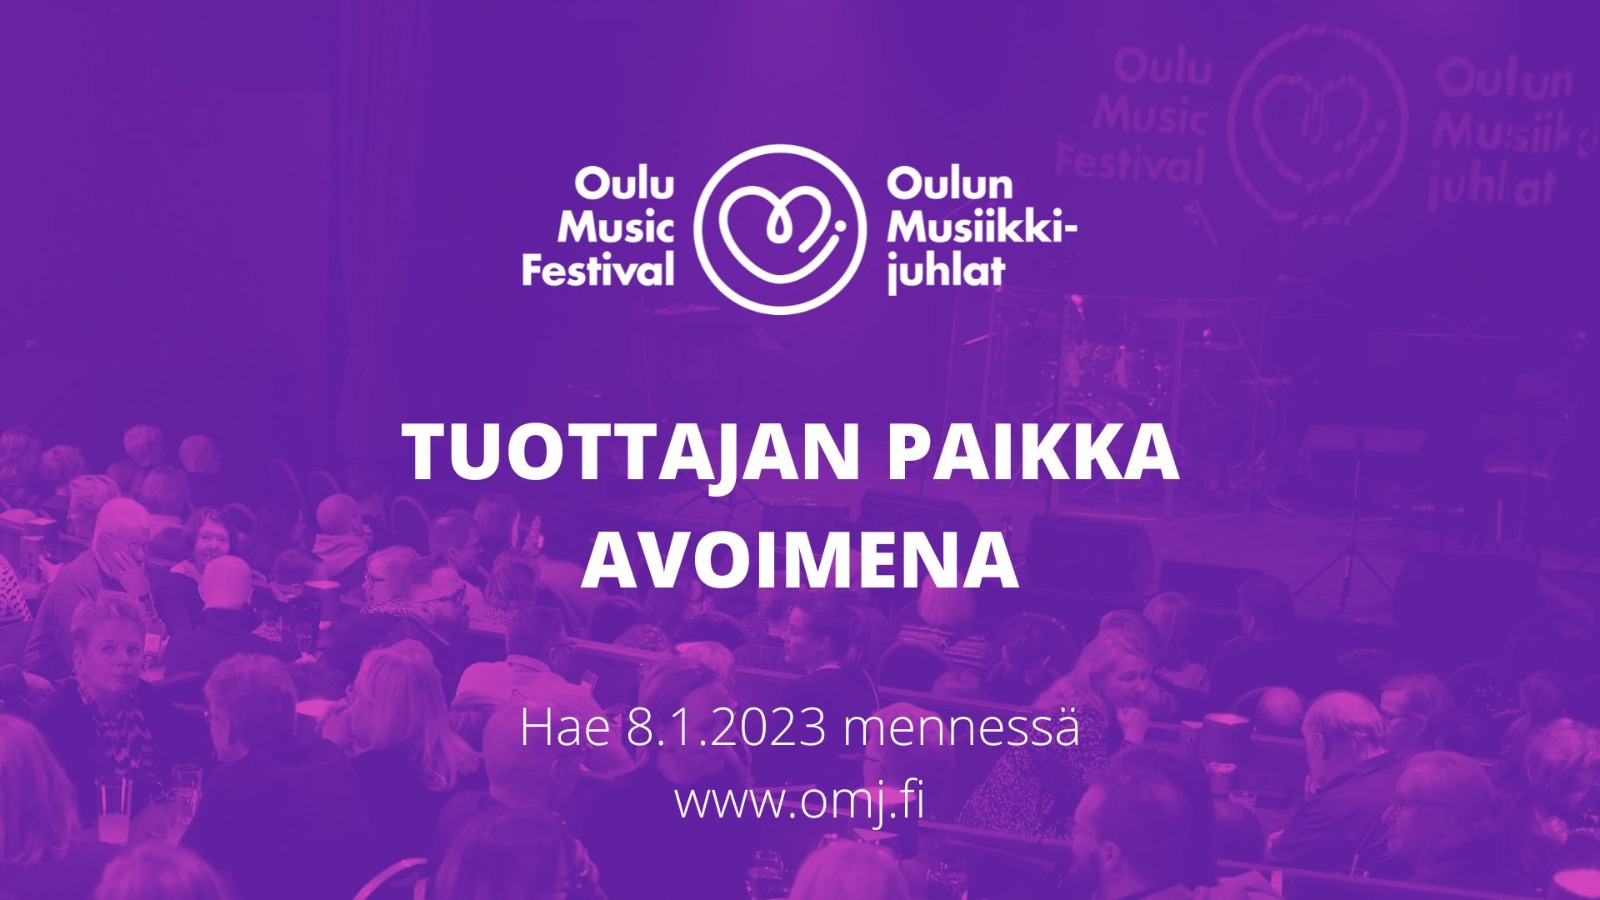 Oulun musiikkijuhlasäätiö hakee tuottajaa | OMJ News